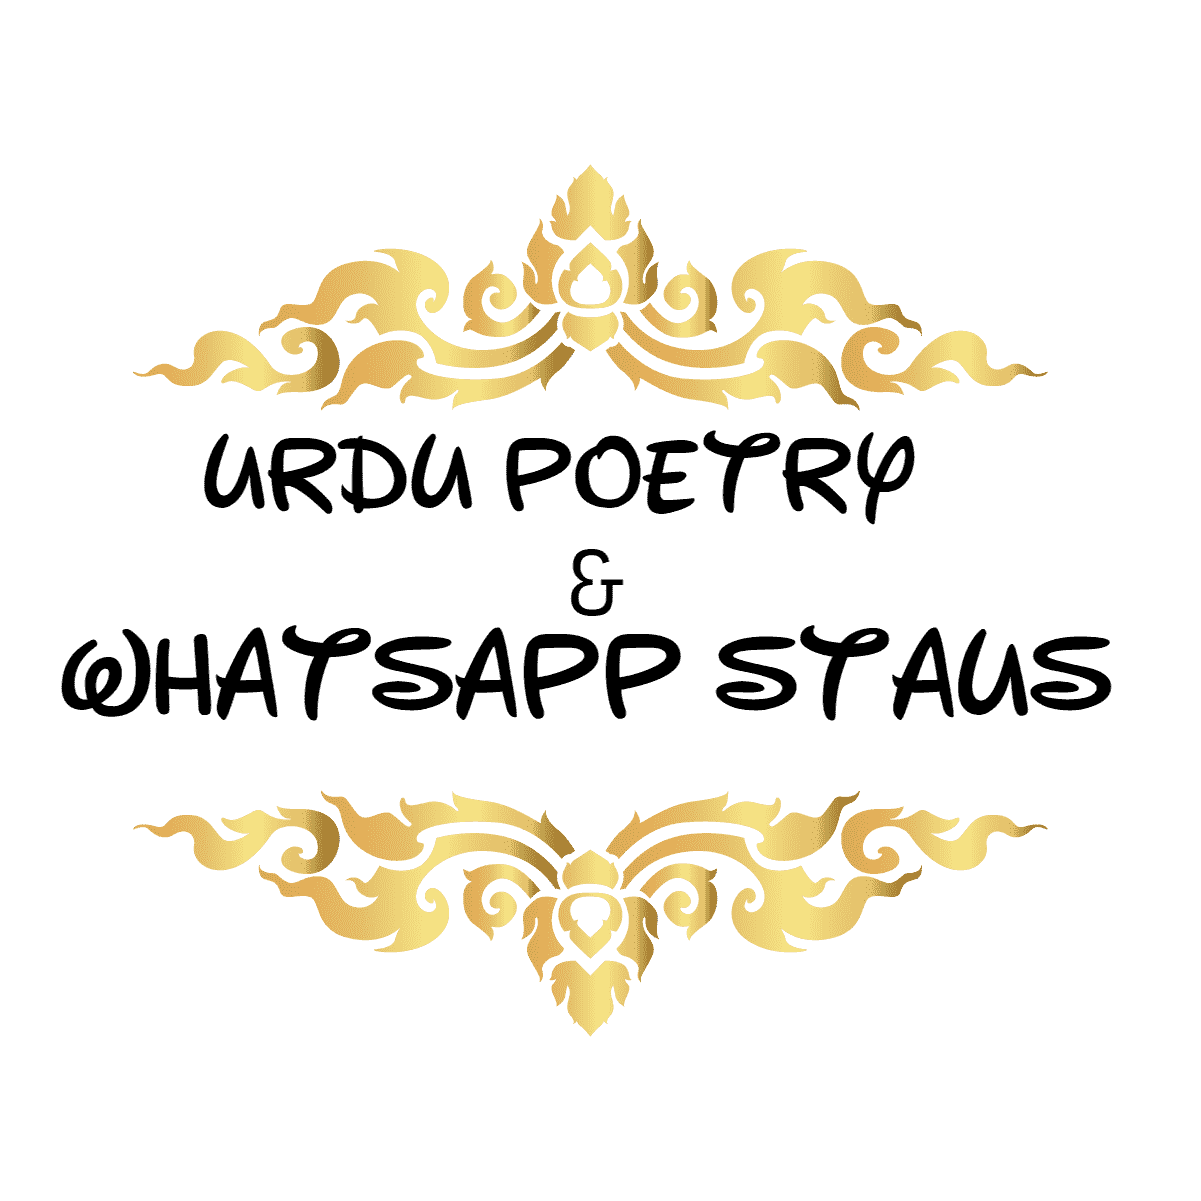 Urdu Poetry - Whatsapp Status 2020